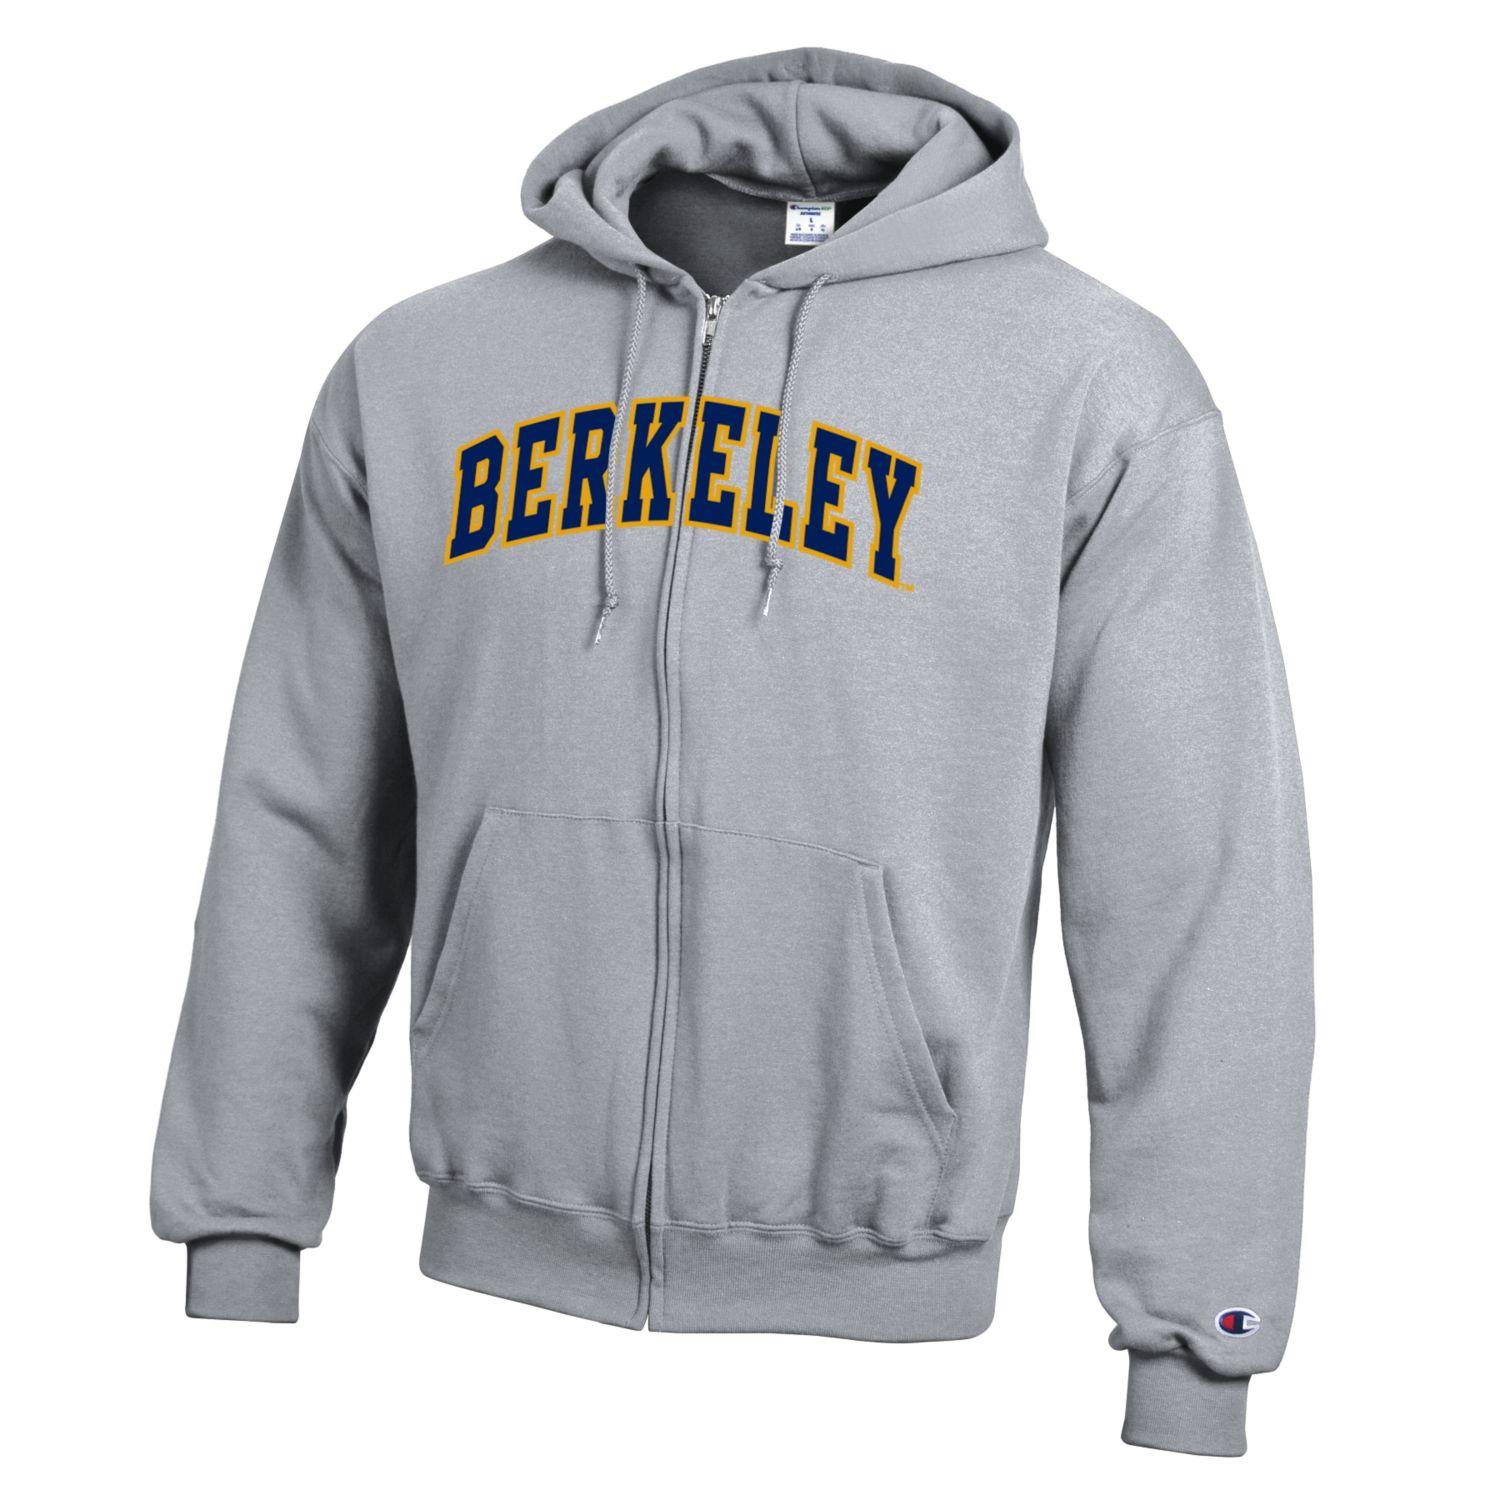 U.C. Berkeley double applique Berkeley arch Champion zip-up sweatshirt-Gray-Shop College Wear